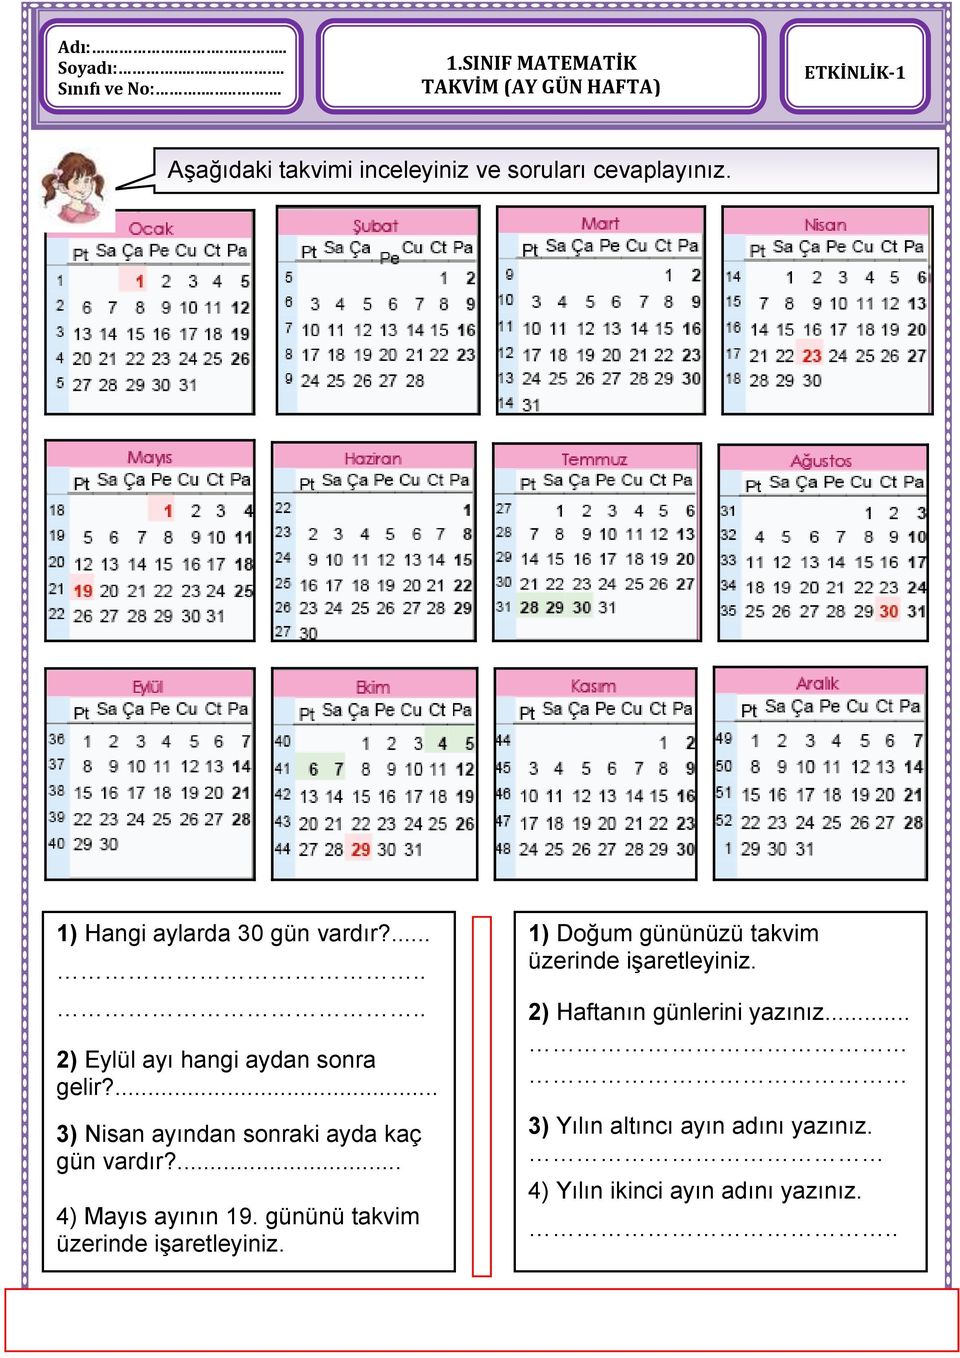 1) Hangi aylarda 30 gün vardır?....... 2) Eylül ayı hangi aydan sonra gelir?